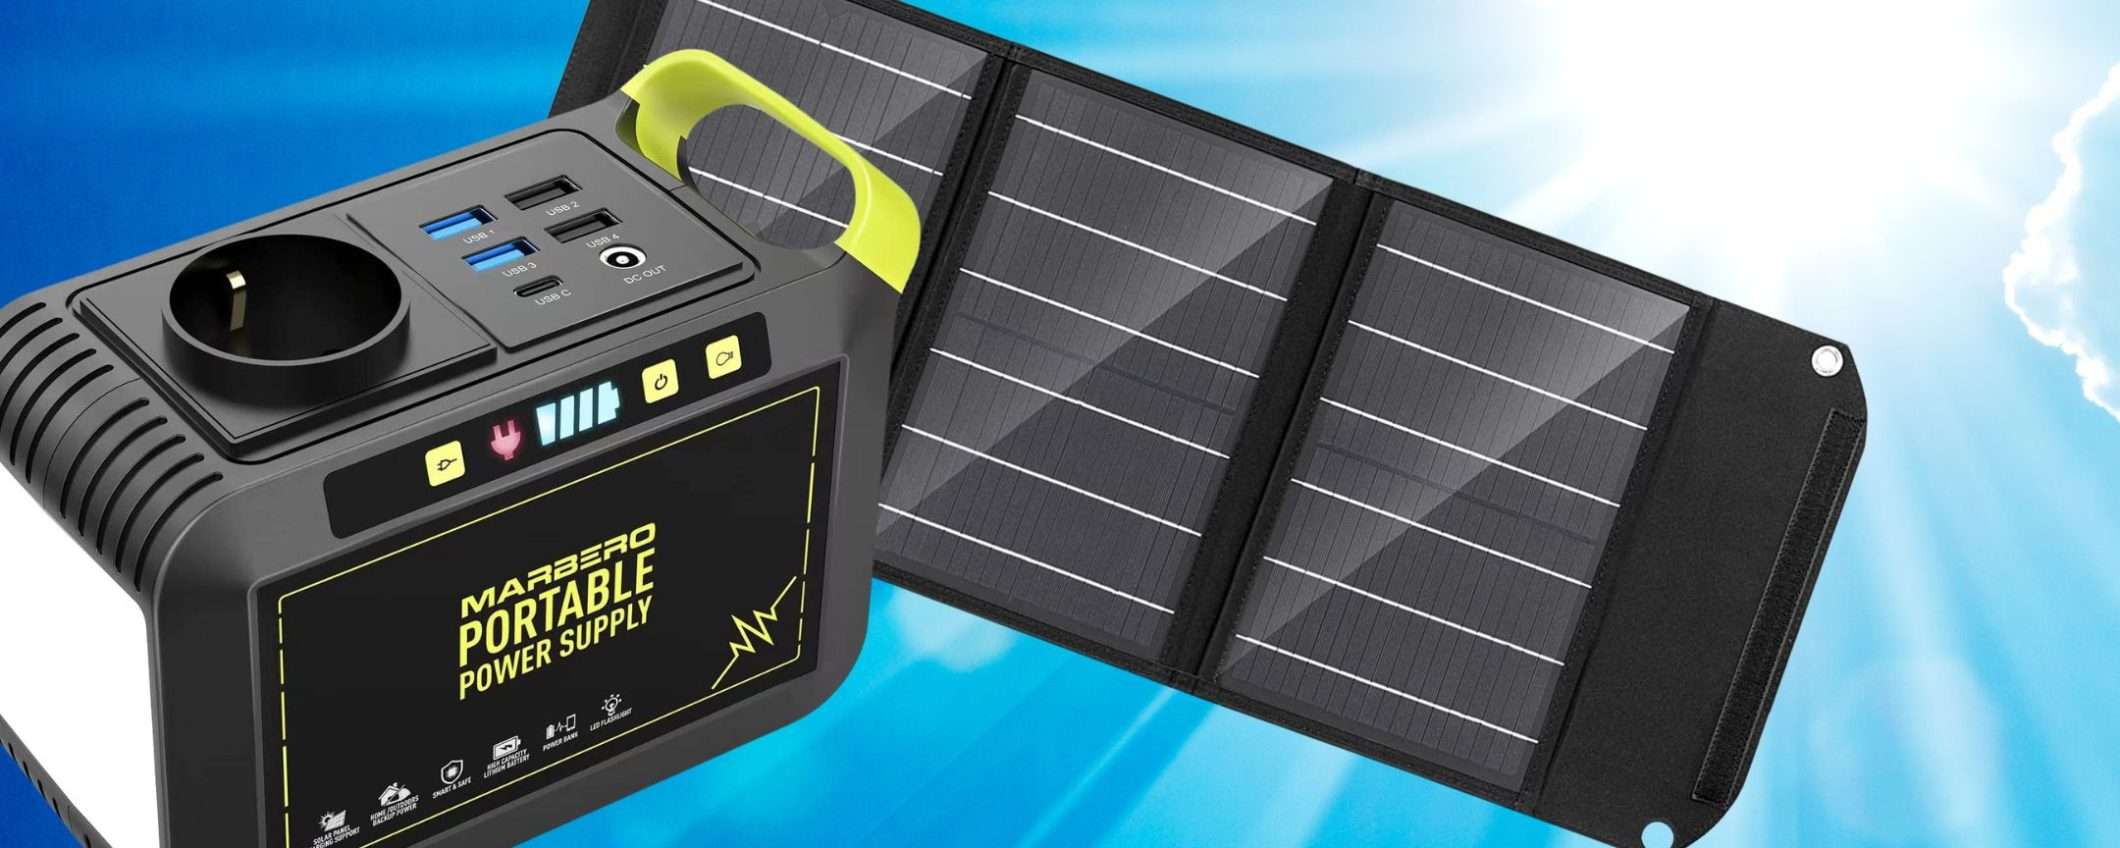 Centrale elettrica solare completa a 175€: occasione Amazon ASSURDA (tripla promo)